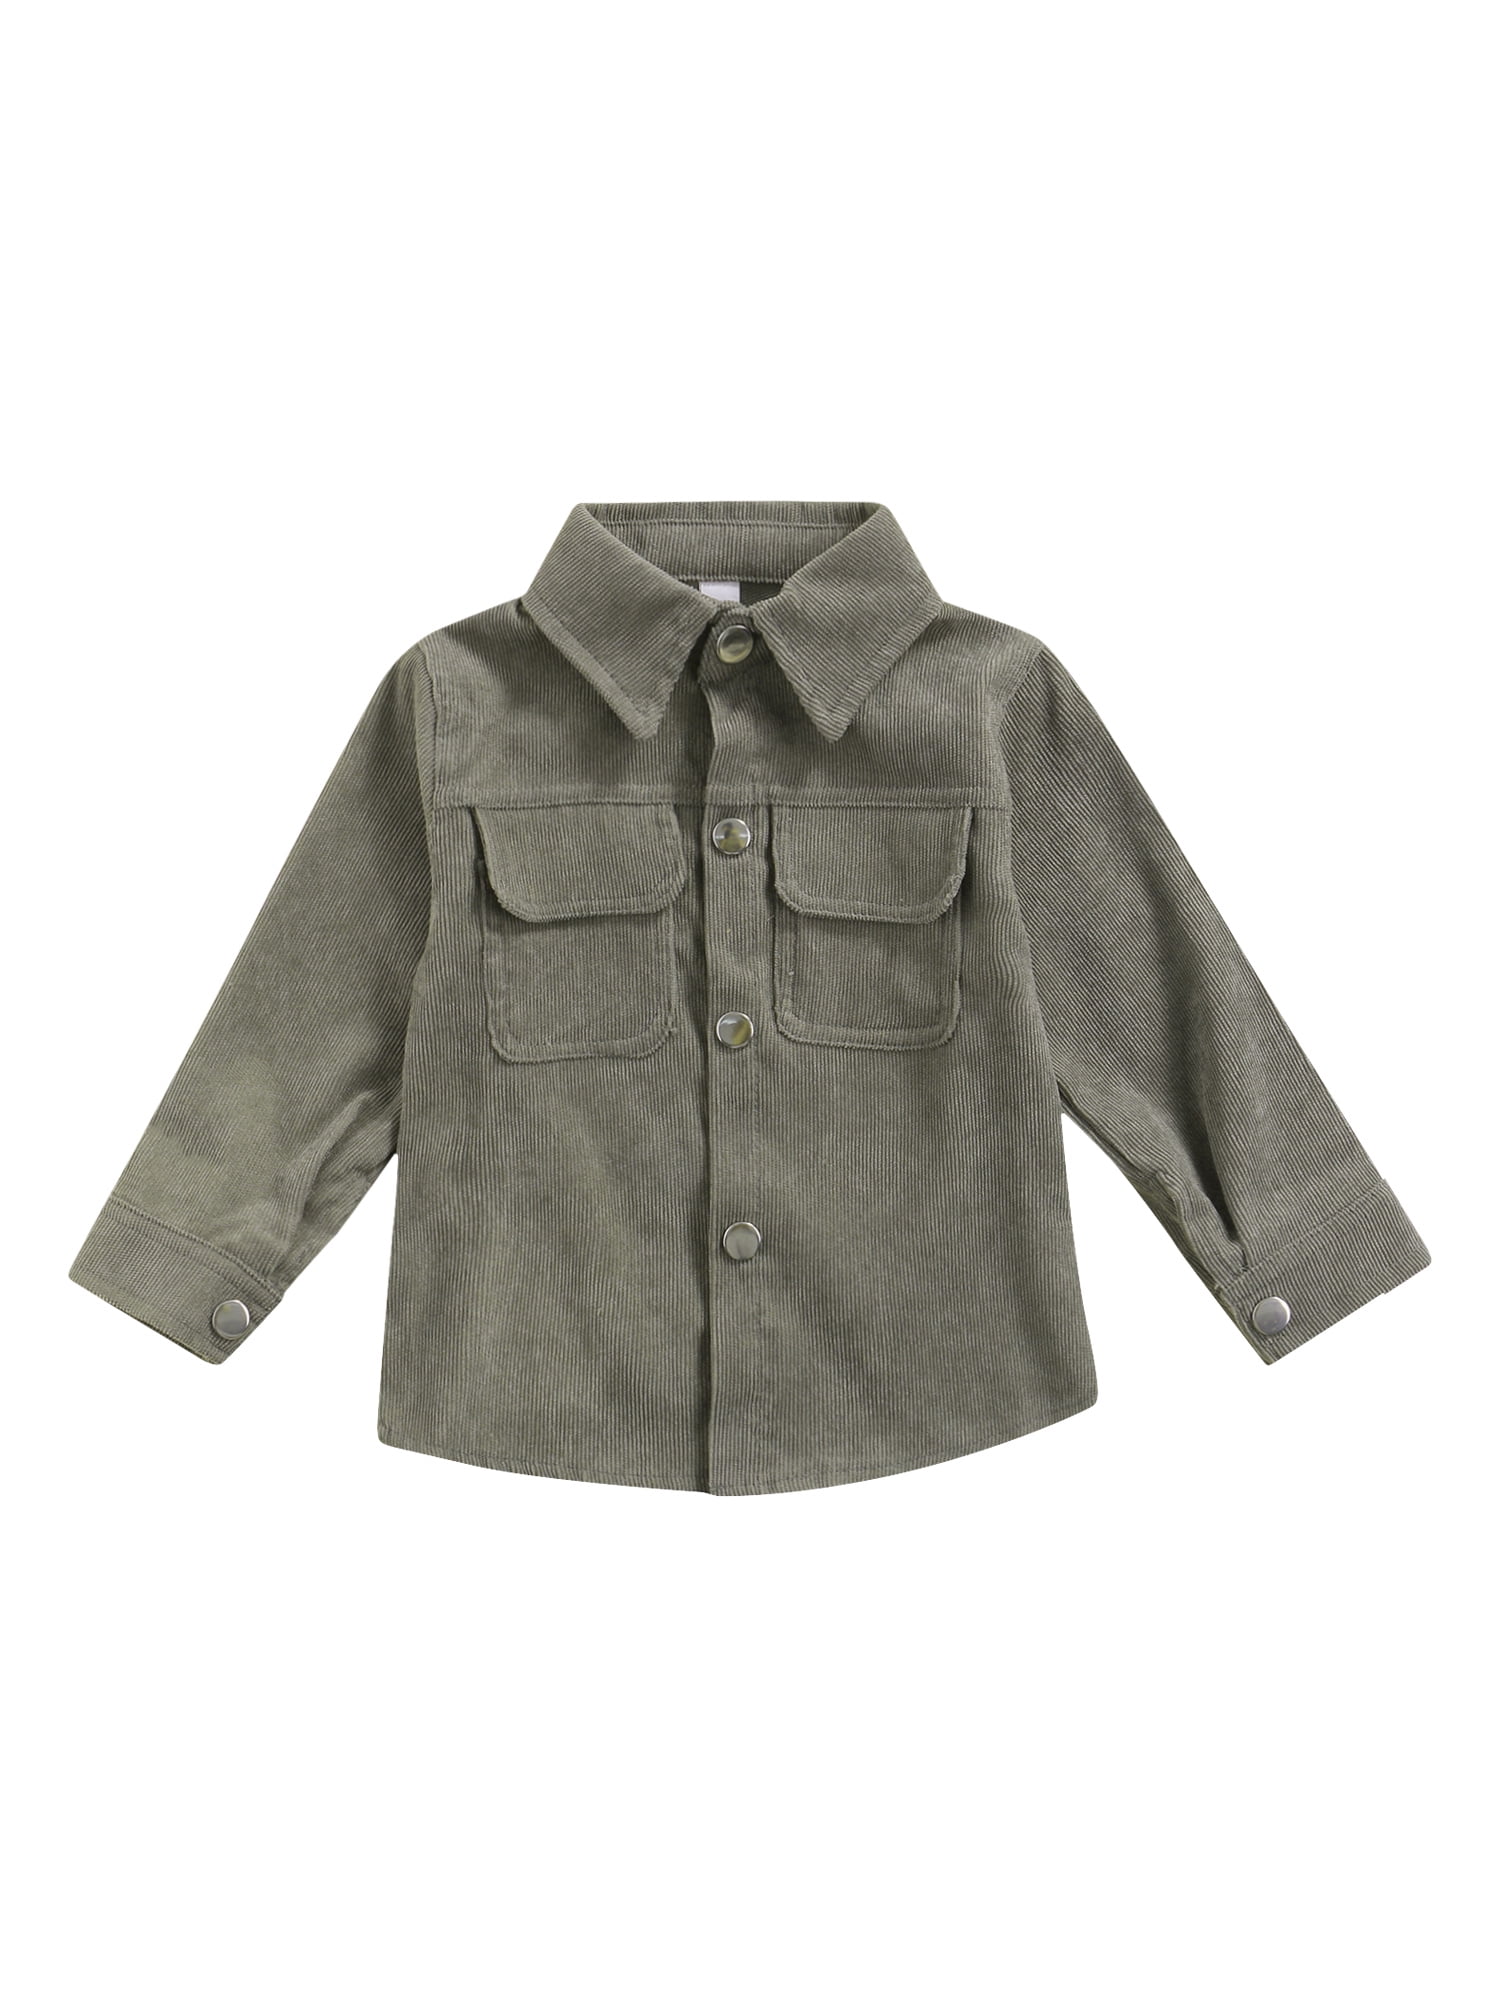 Fall Corduroy Shacket for Kids Clothing Unisex Kids Clothing Jackets & Coats 